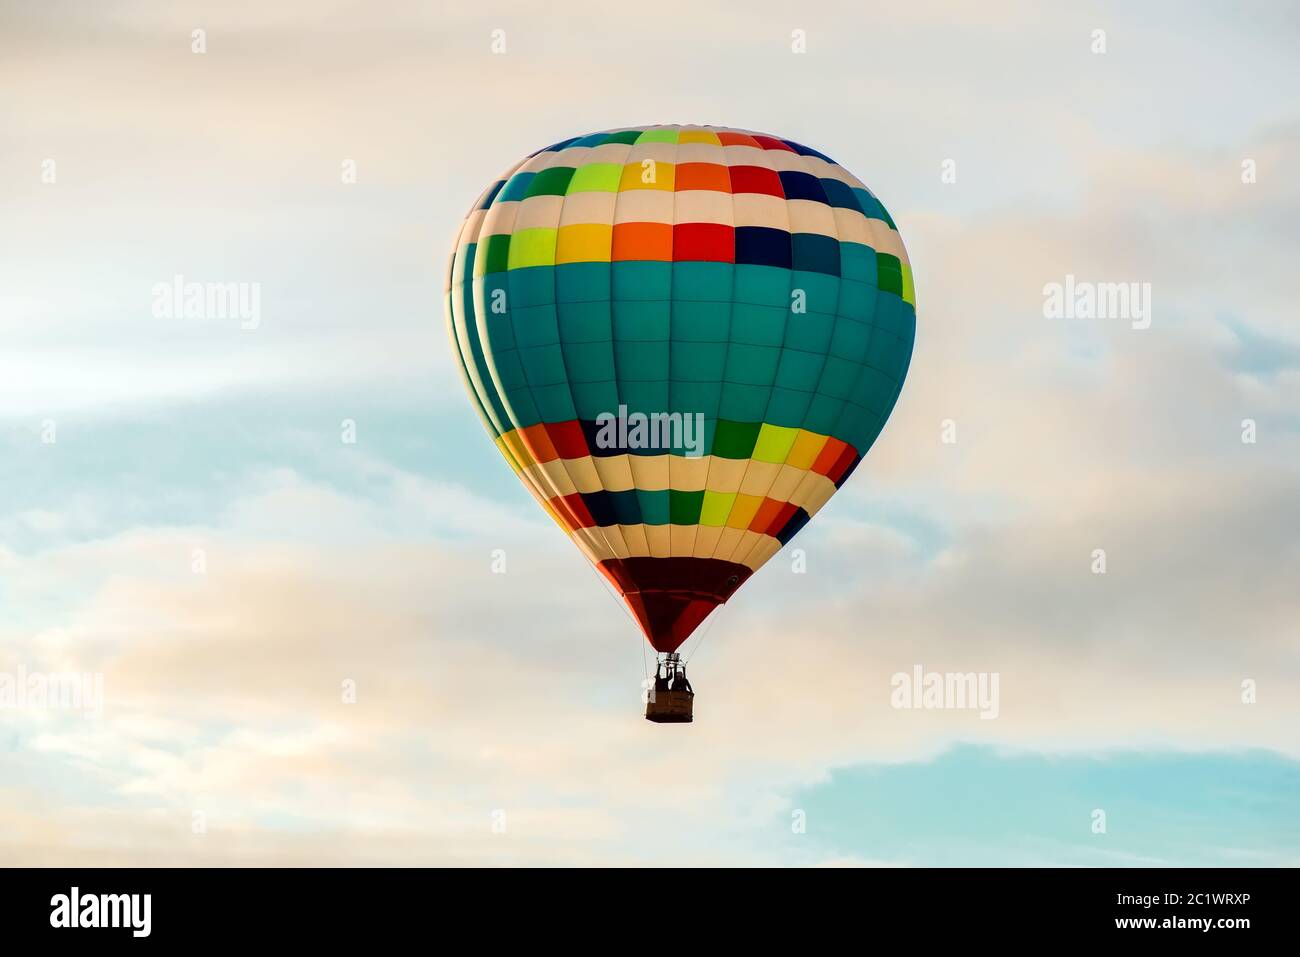 Ballon d'air chaud coloré, grand vol contre le ciel nuageux Banque D'Images